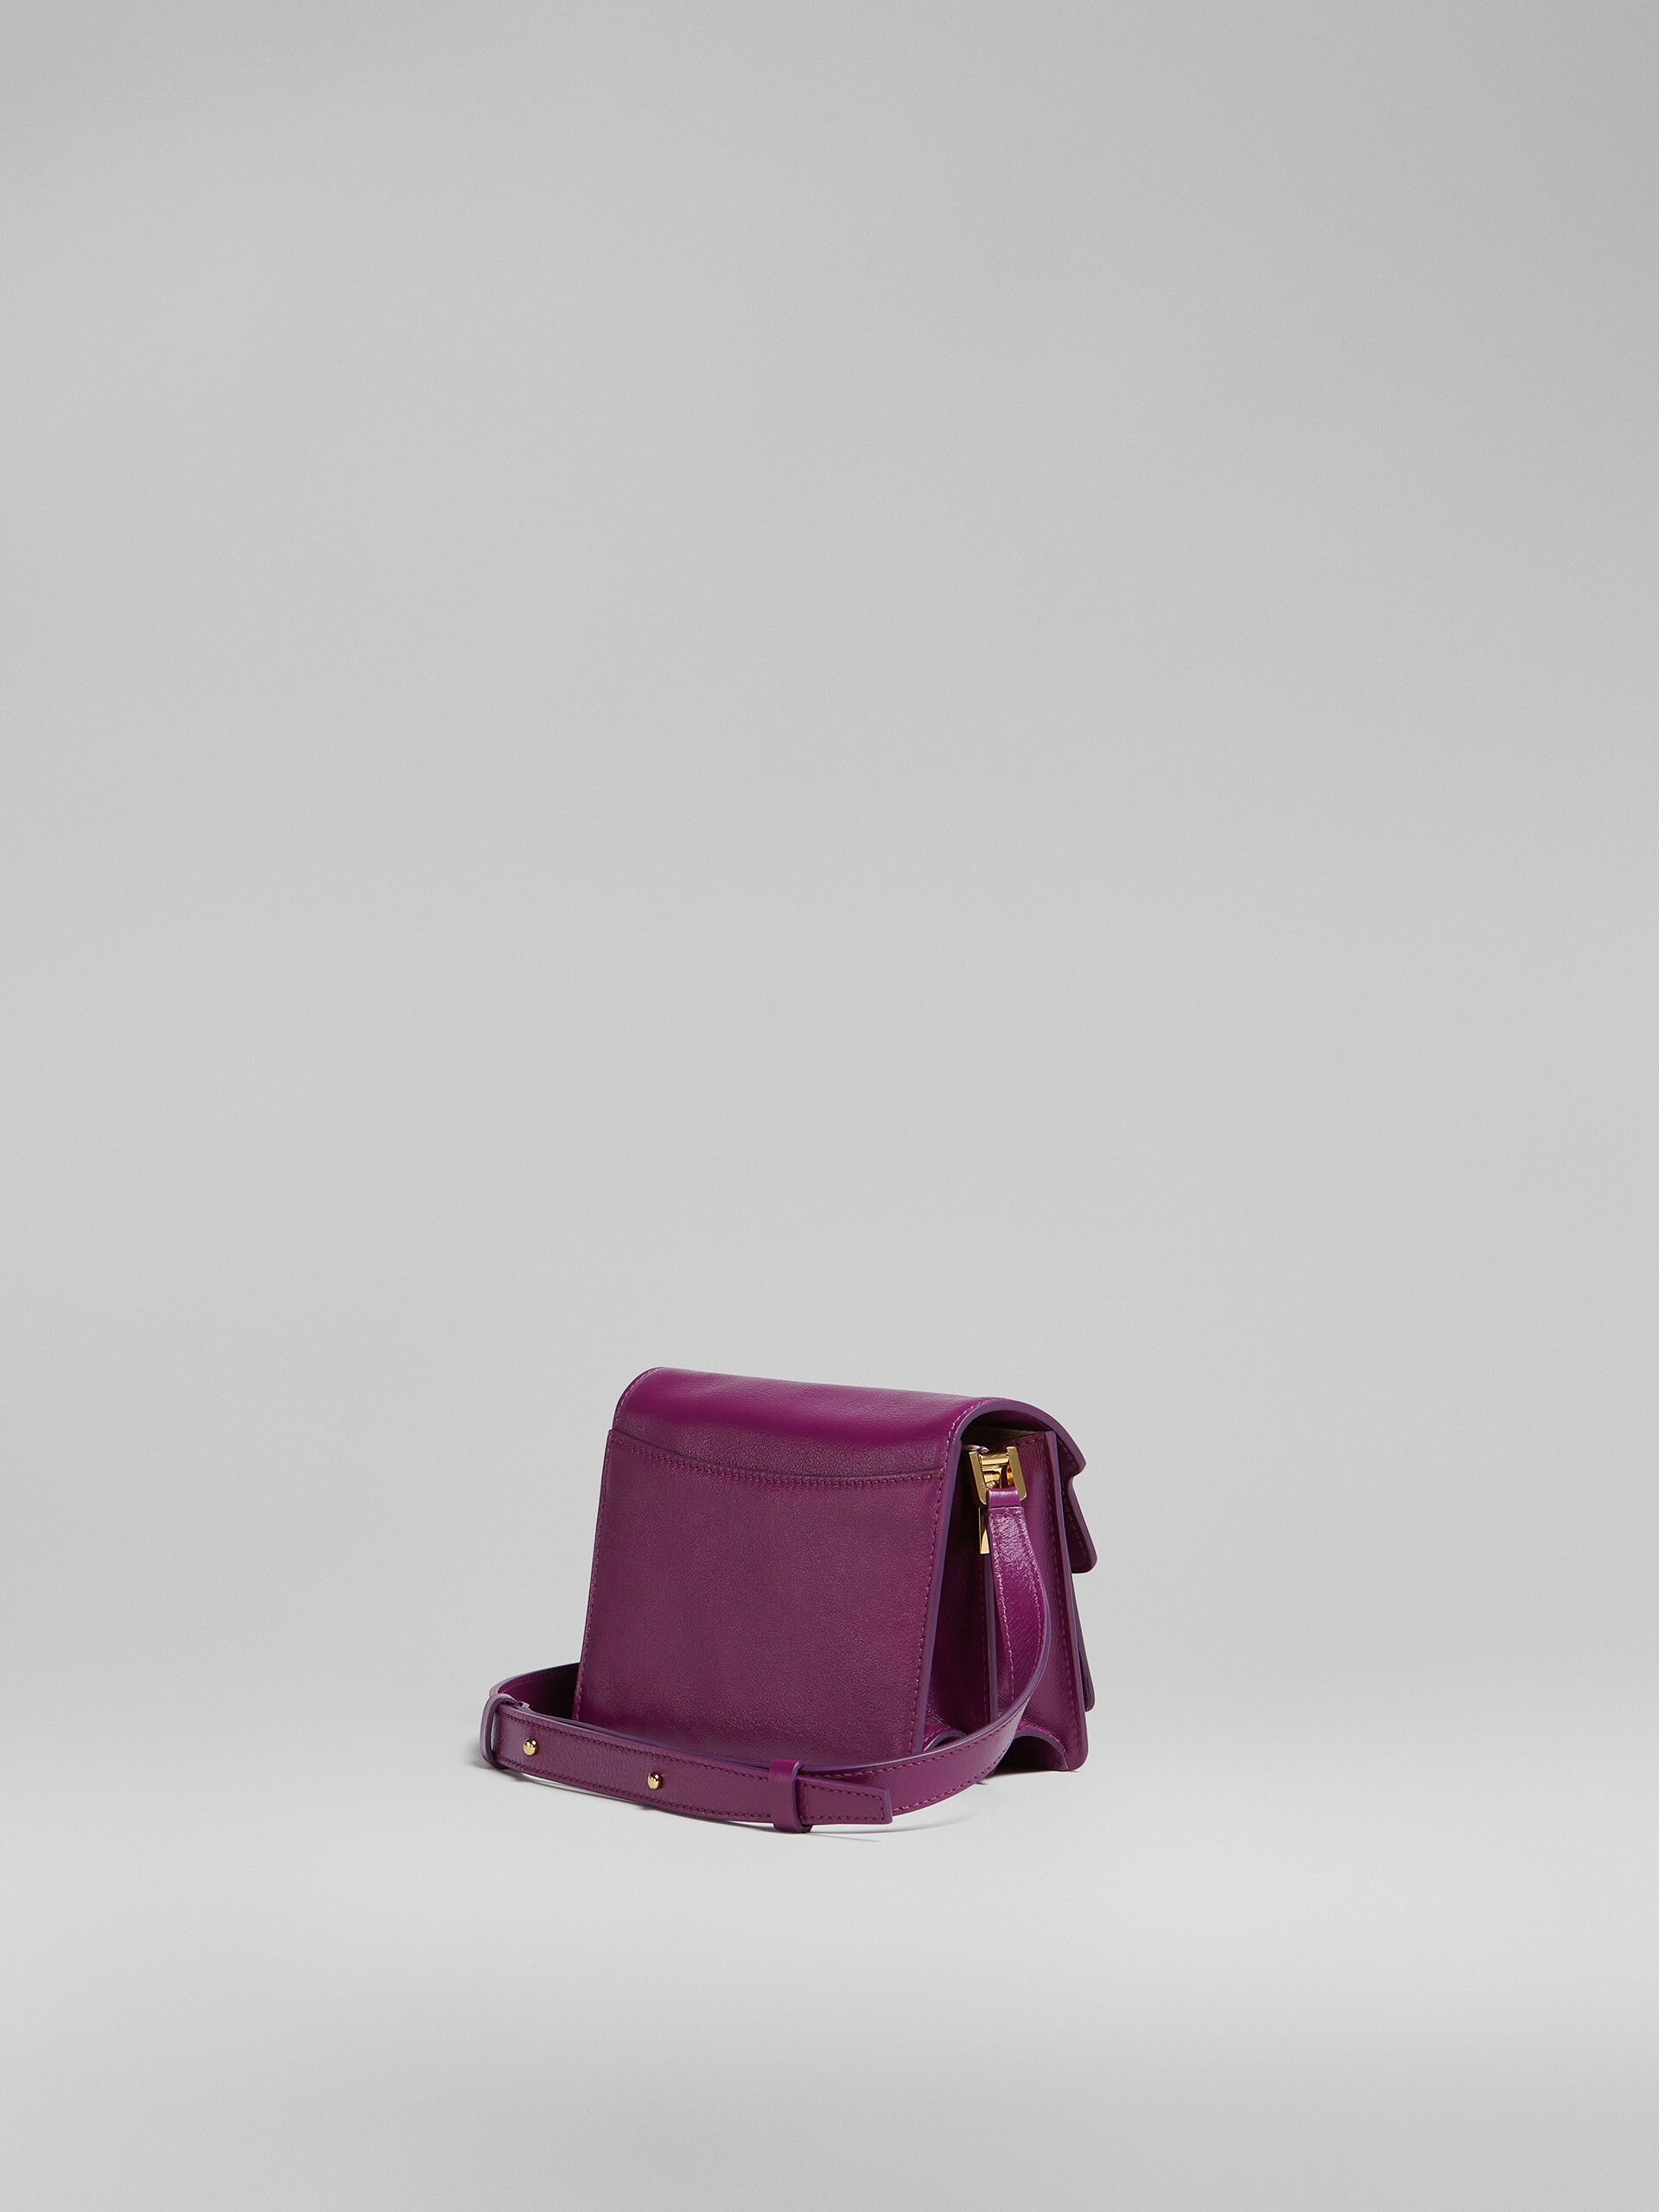 TRUNK SOFT mini bag in purple leather - Shoulder Bag - Image 3